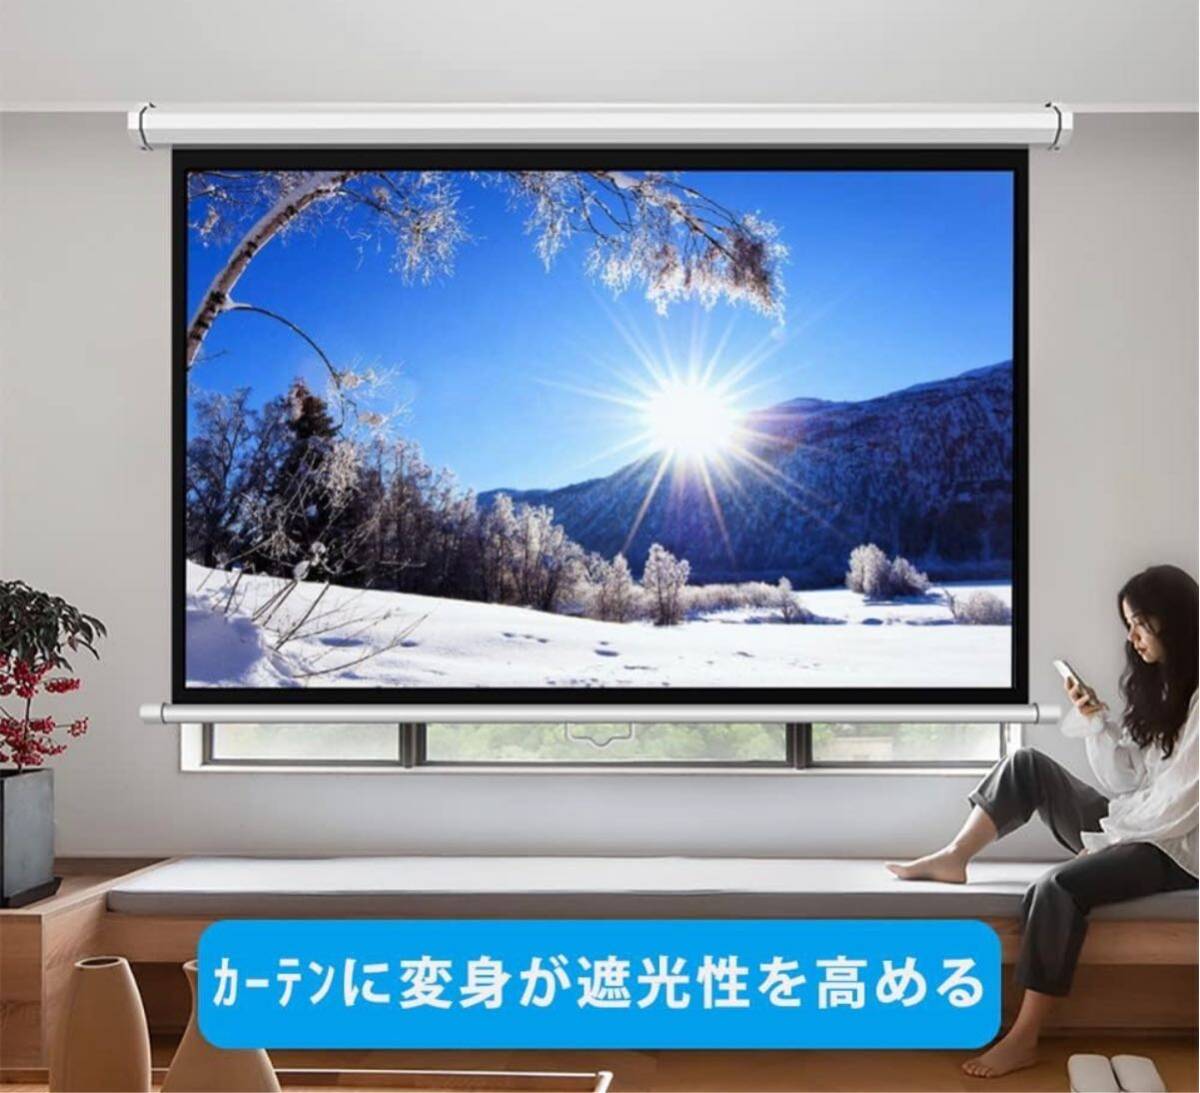  проектор экран подвешивание ниже тип 100 дюймовый 16:9 б/у 